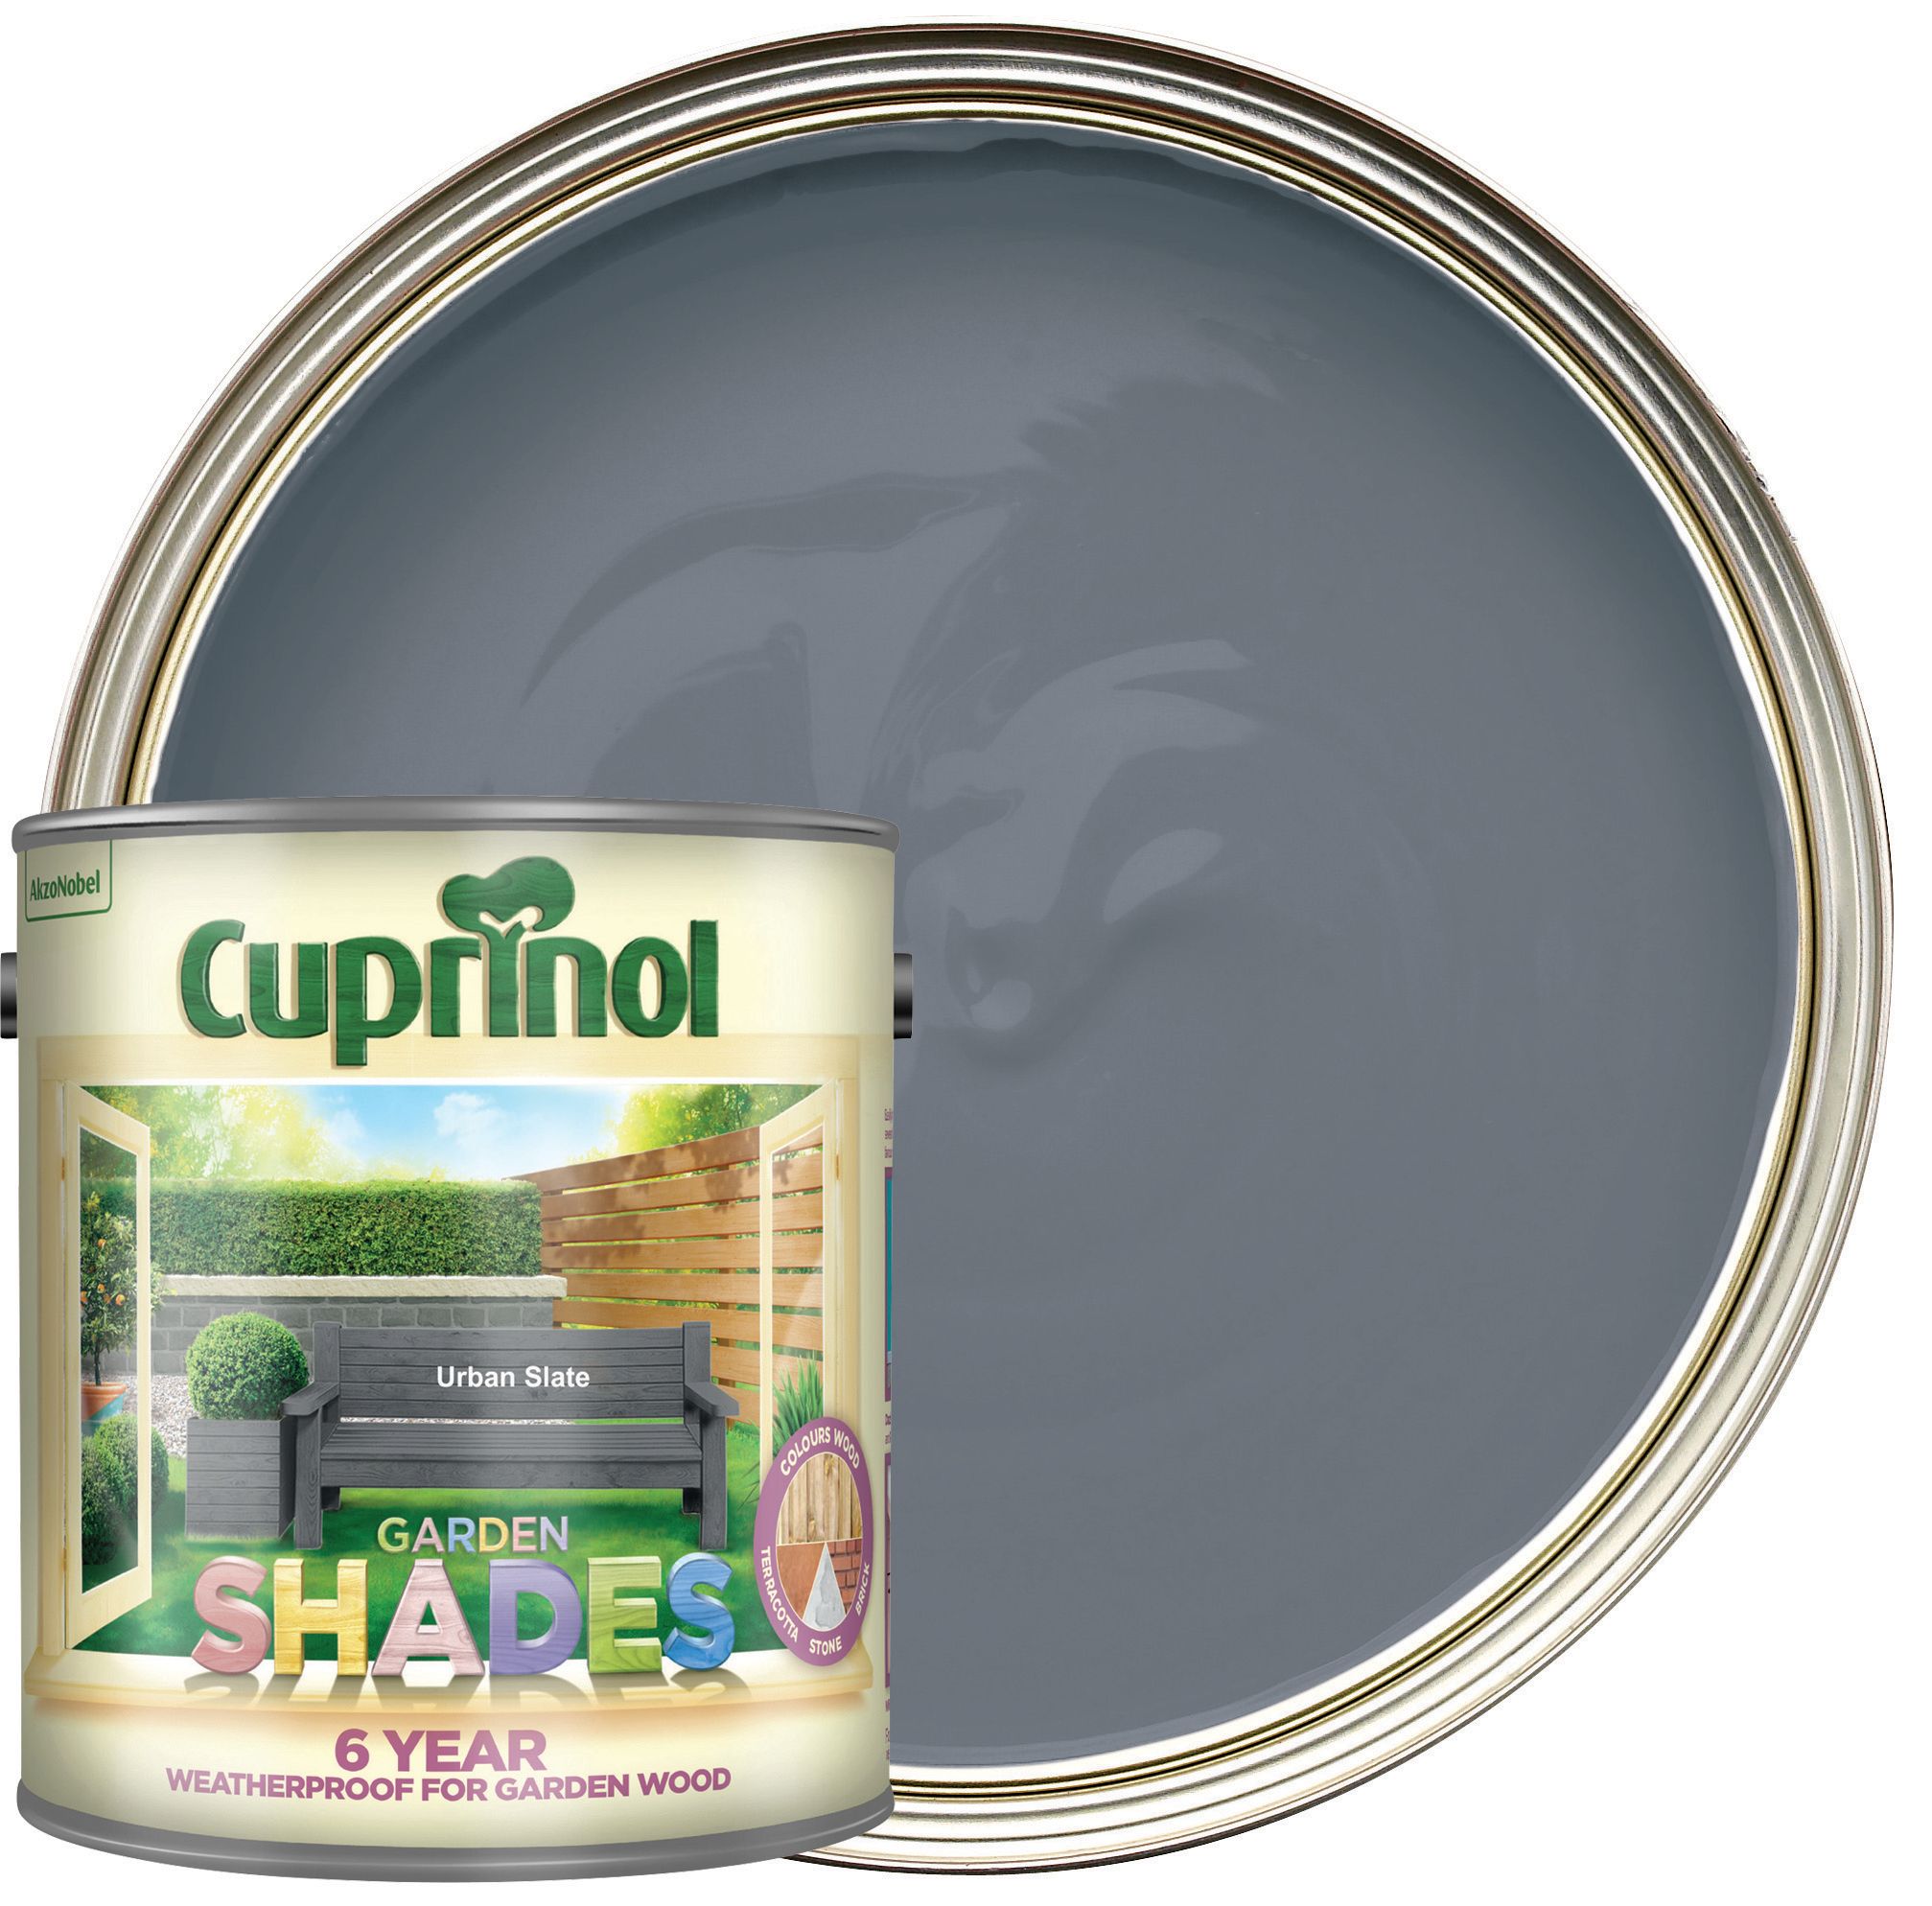 Cuprinol Garden Shades Matt Wood Treatment - Urban Slate 2.5L